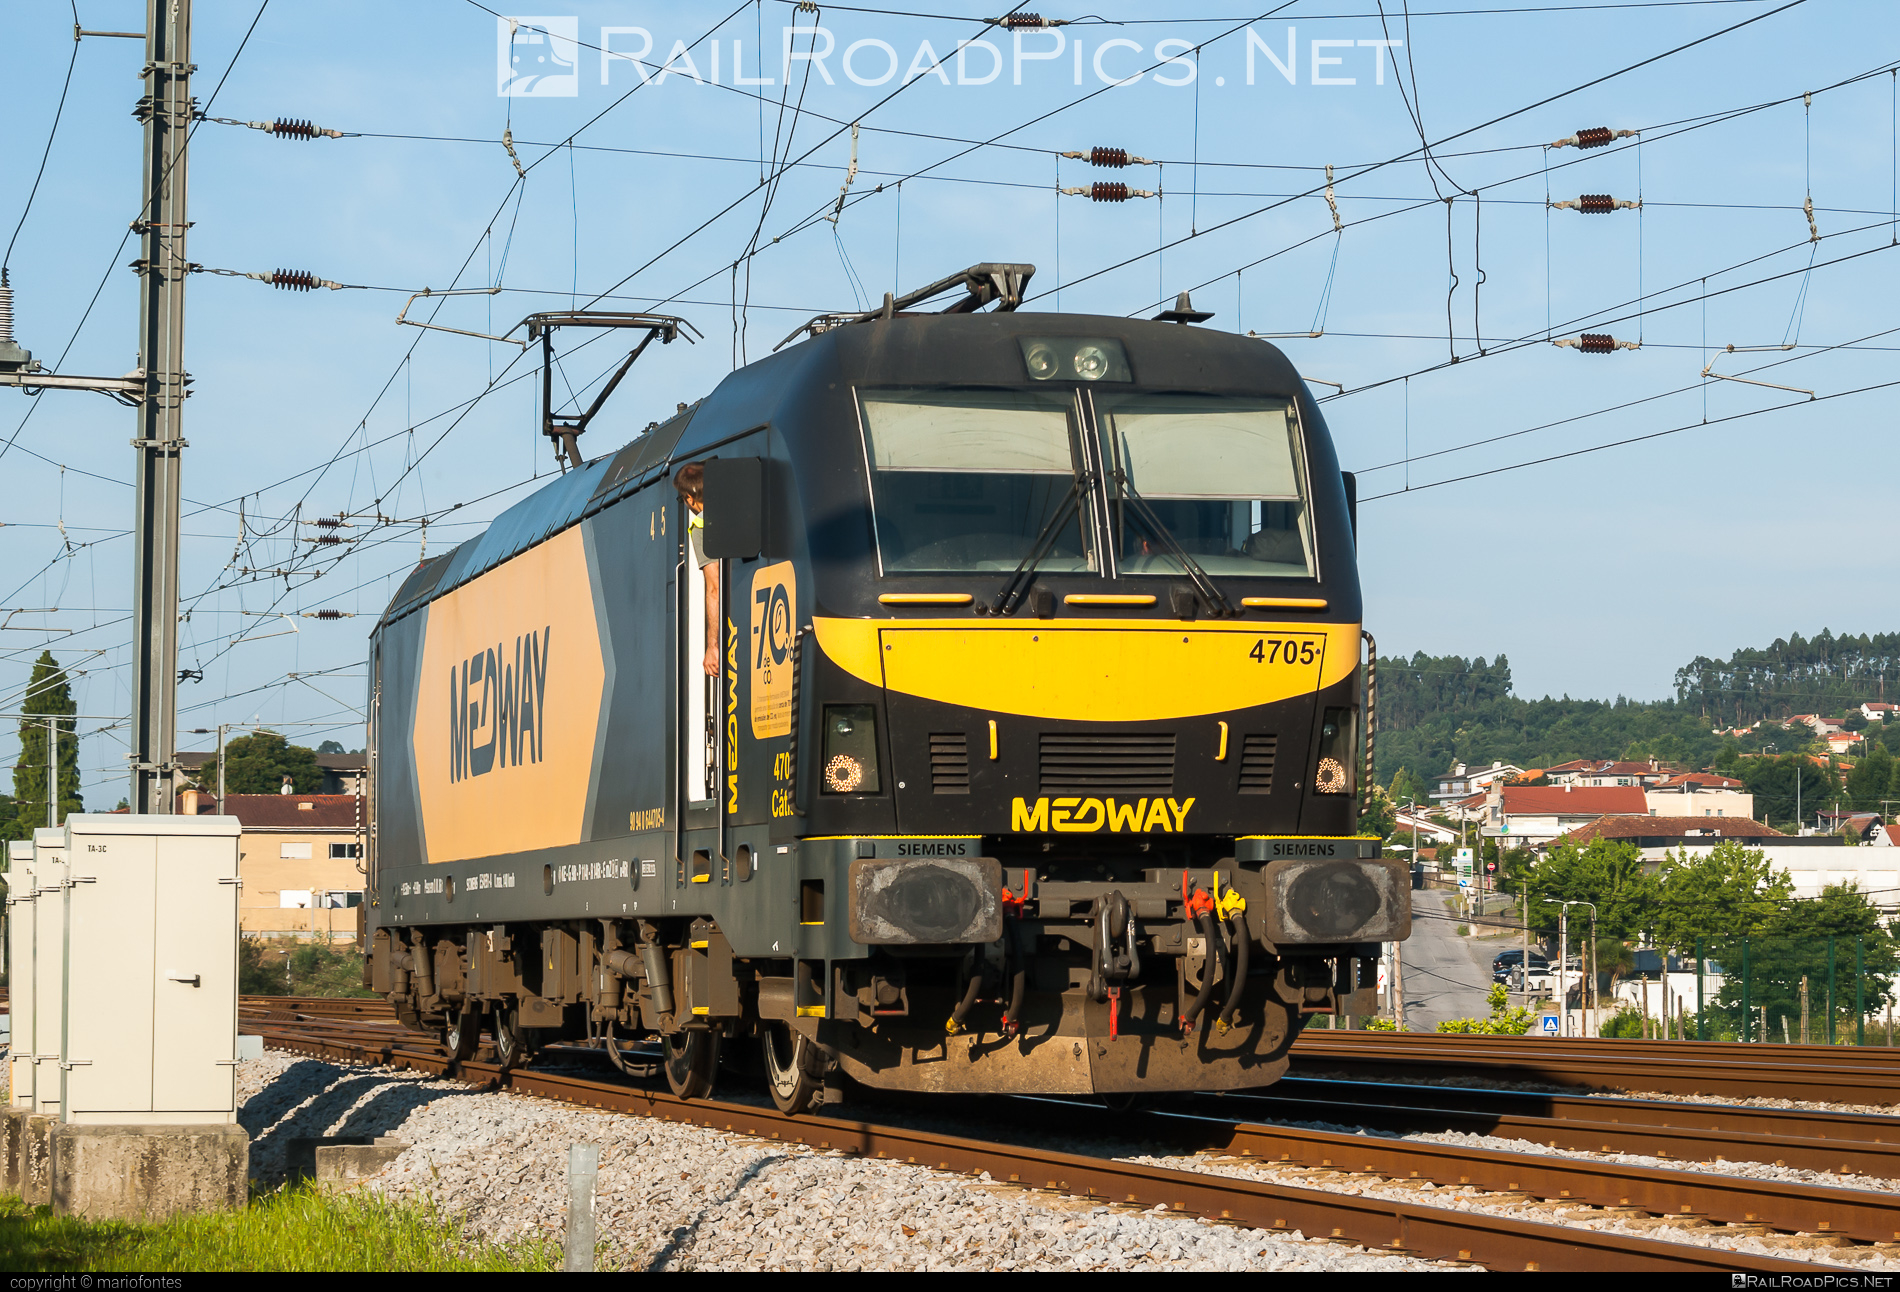 Siemens ES 46 B1-A - 4705 operated by MEDWAY - Operador Ferroviário e Logistico de Mercadorias, SA #cpClass4700 #cpLe4700 #es46b1 #es46b1a #euroSprinter #medway #siemens #siemensEs46b1a #siemensEuroSprinter